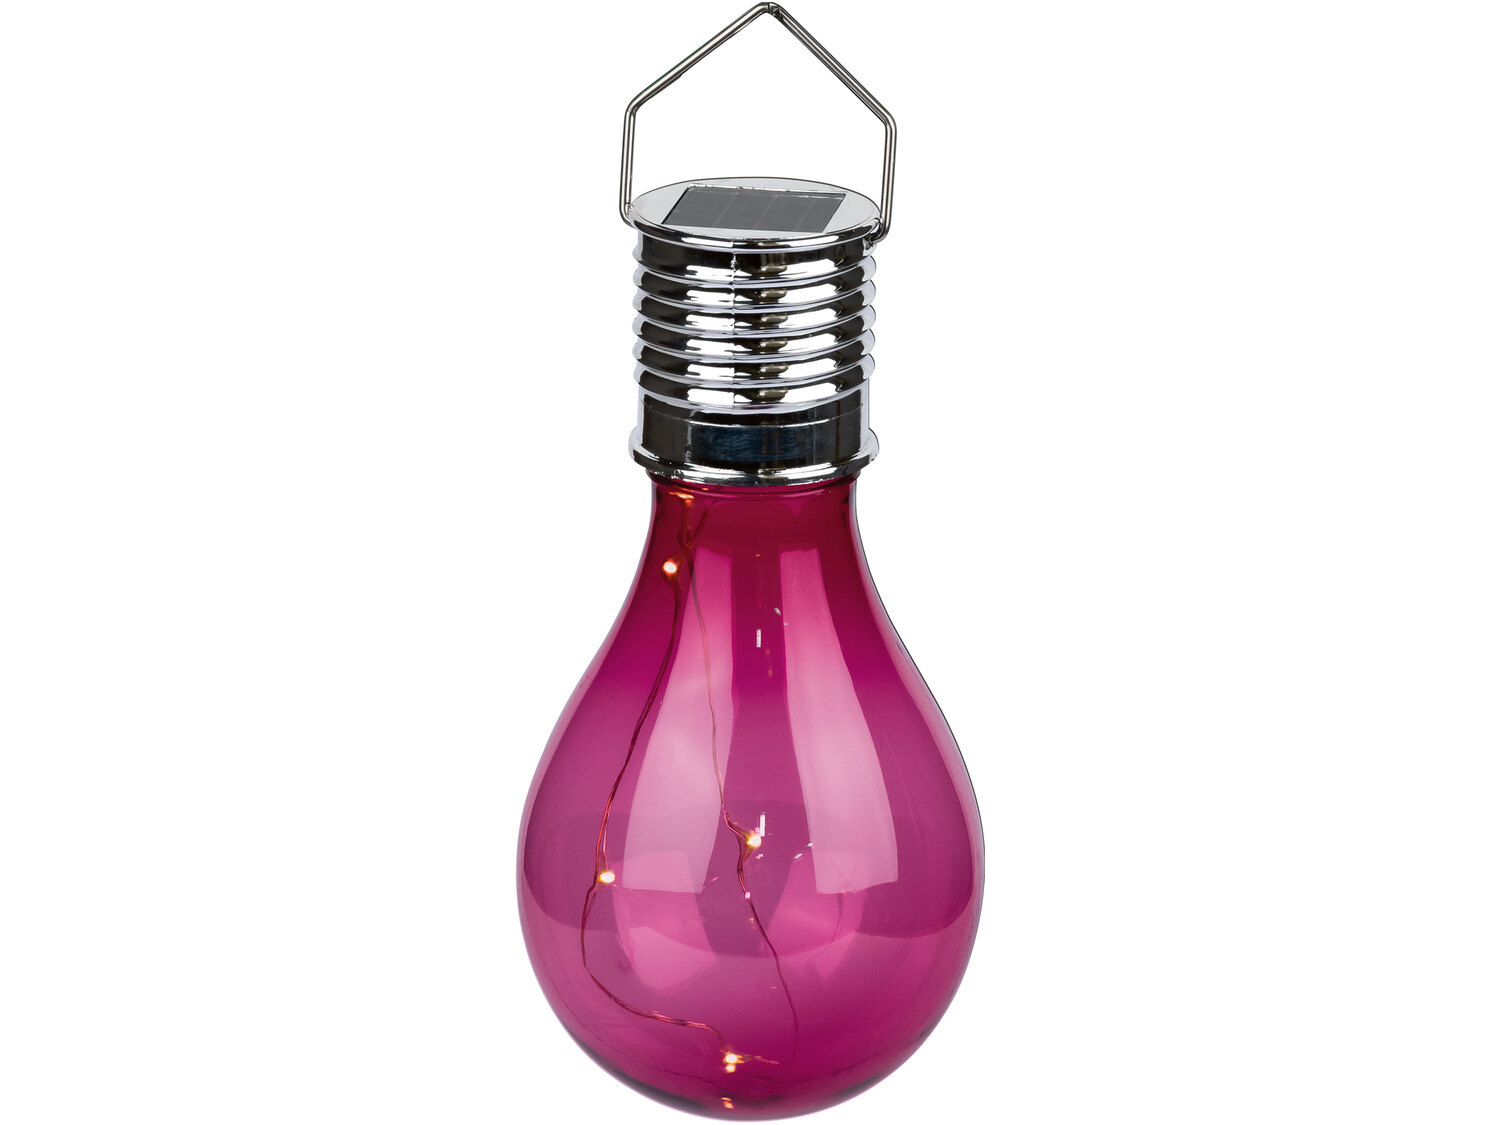 Dekoracyjna lampa solarna Melinera, cena 9,99 PLN 
4 kolory 
- włącza się automatycznie ...